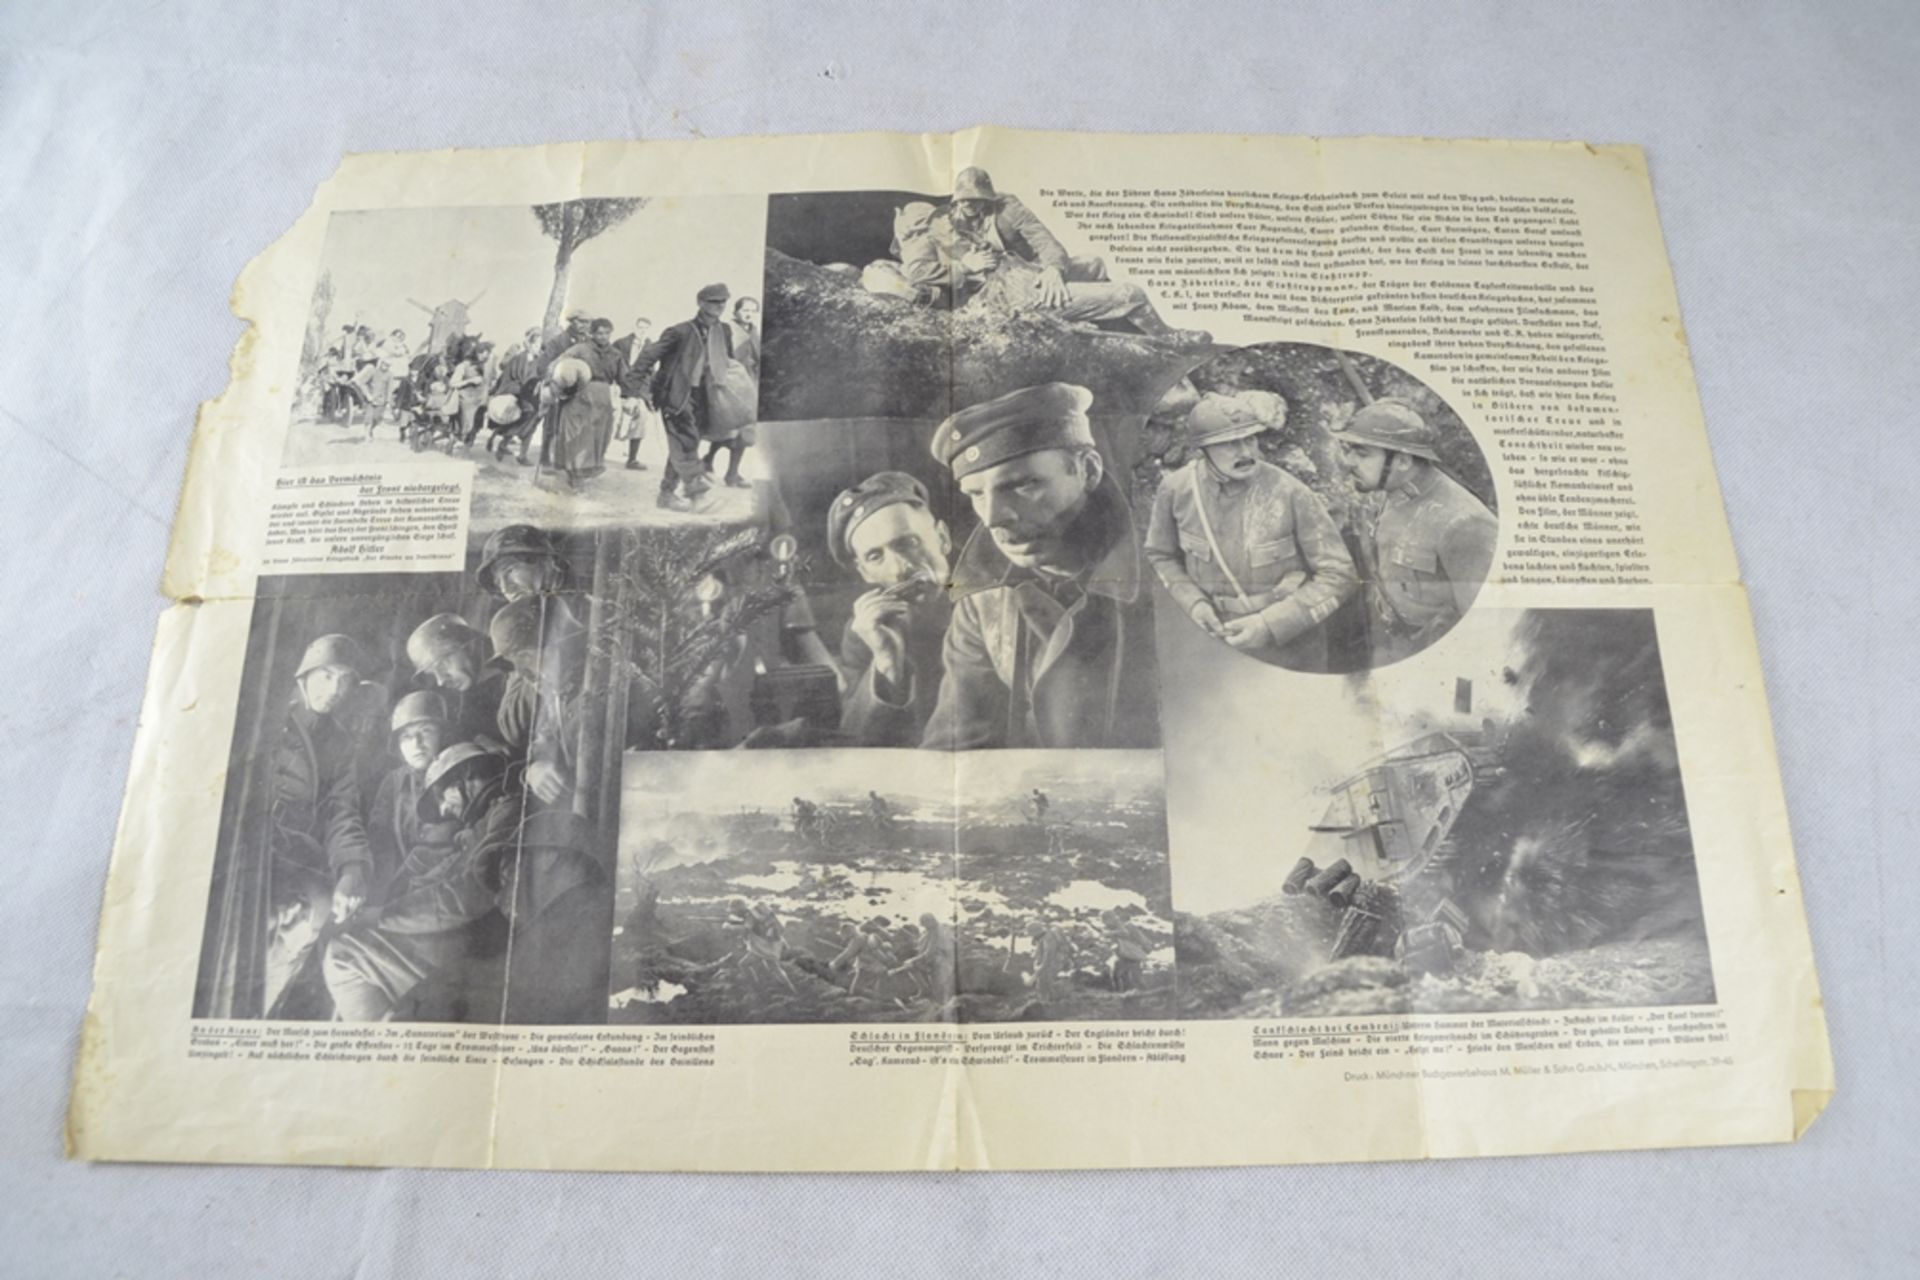 Filmplakat Faltblatt "Stosstrupp 1917" Propagandafilm 1934, Beschädigungen - Bild 2 aus 2